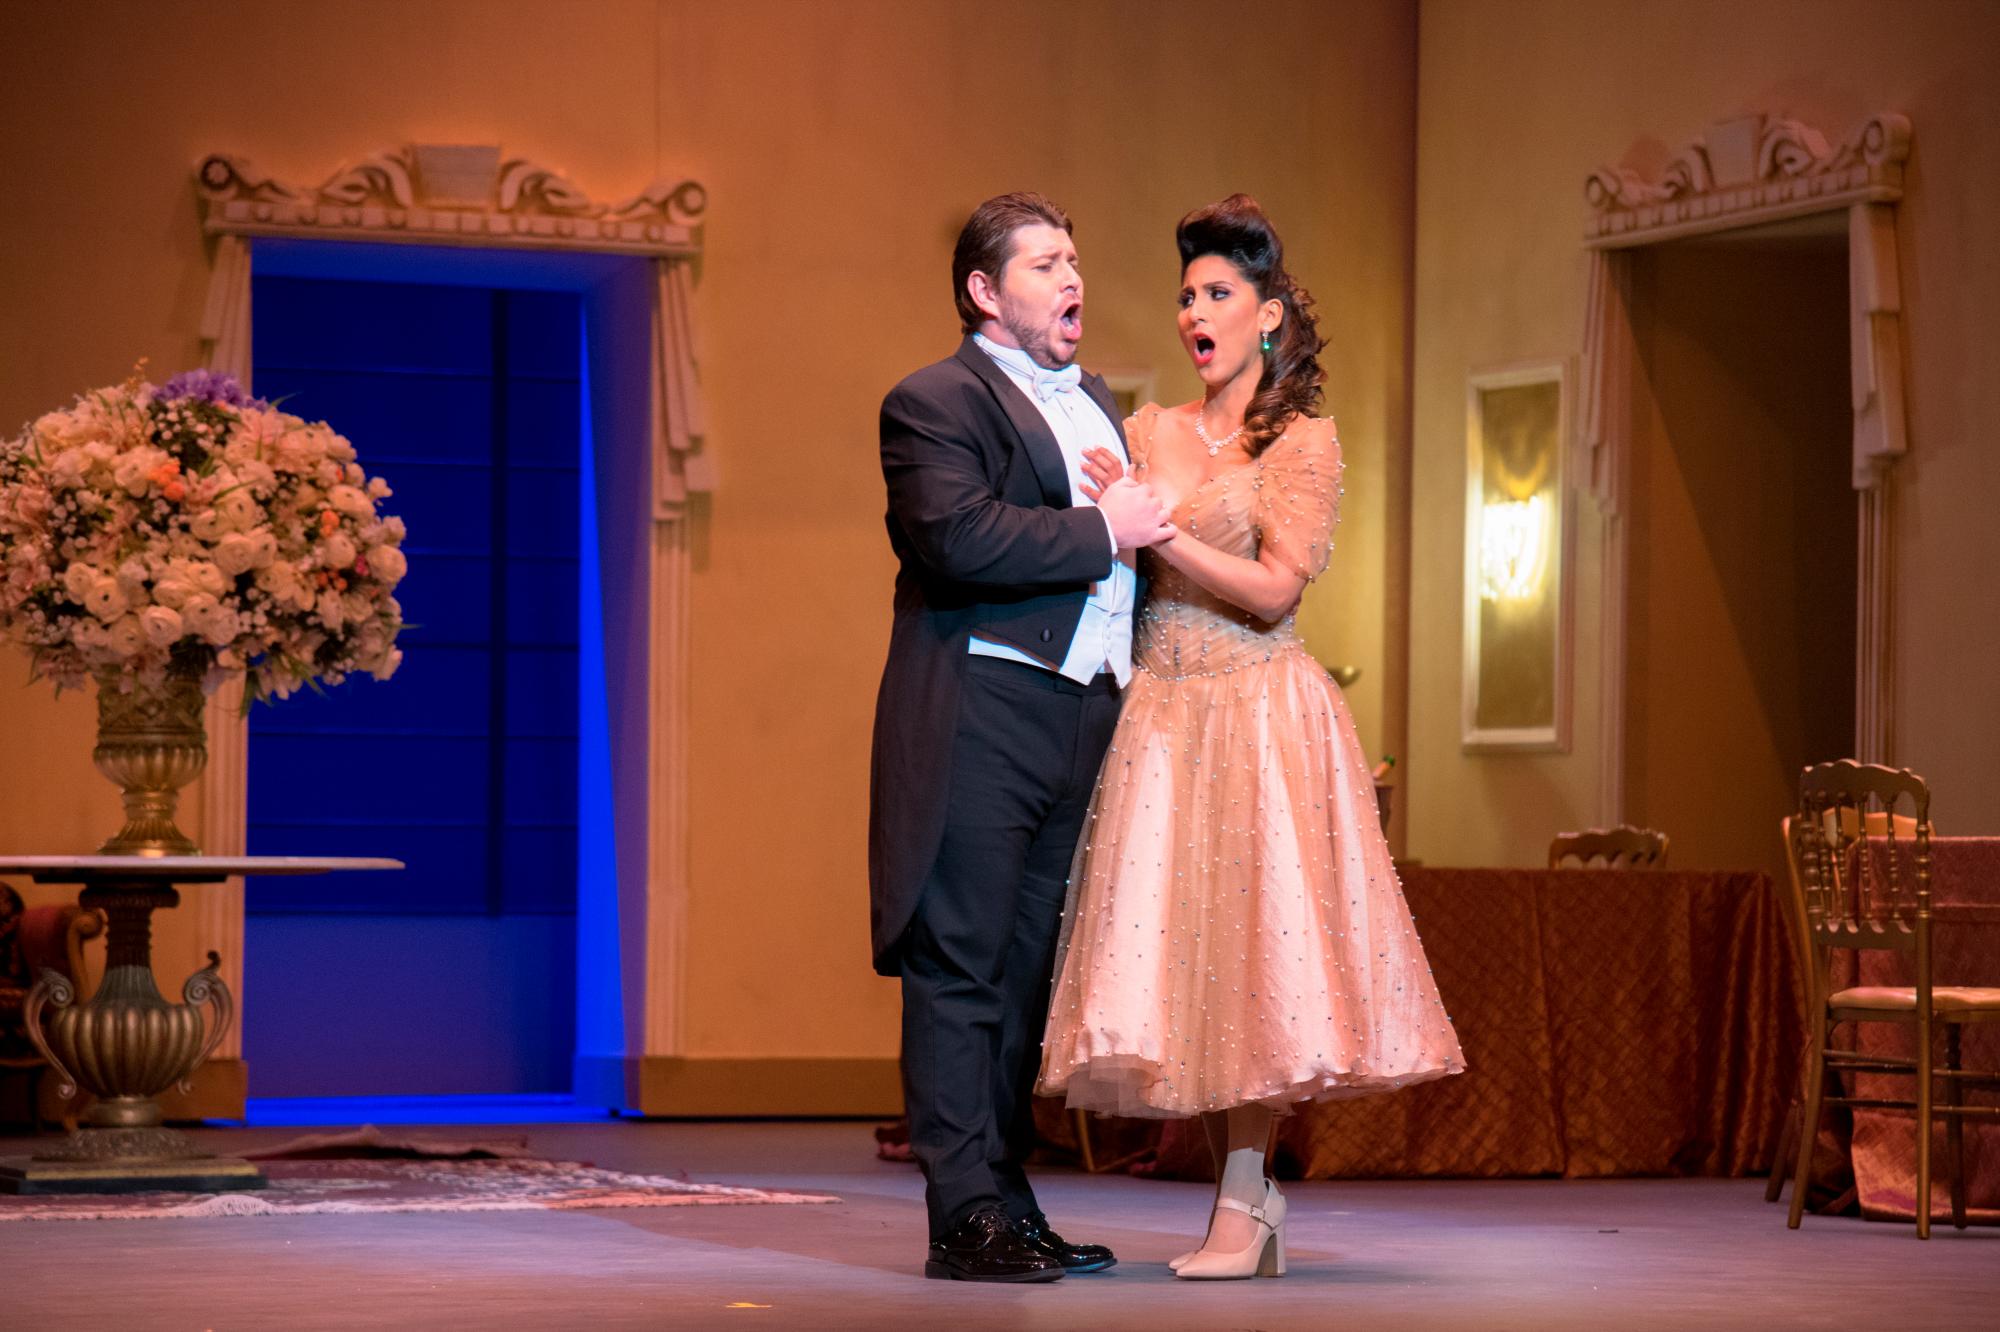 Nathalie Peña Comas y David Astorga reviven la historia de Violetta y Alfredo en una nueva versión de “La Traviata”. Lunes 8 de abril de 2019.